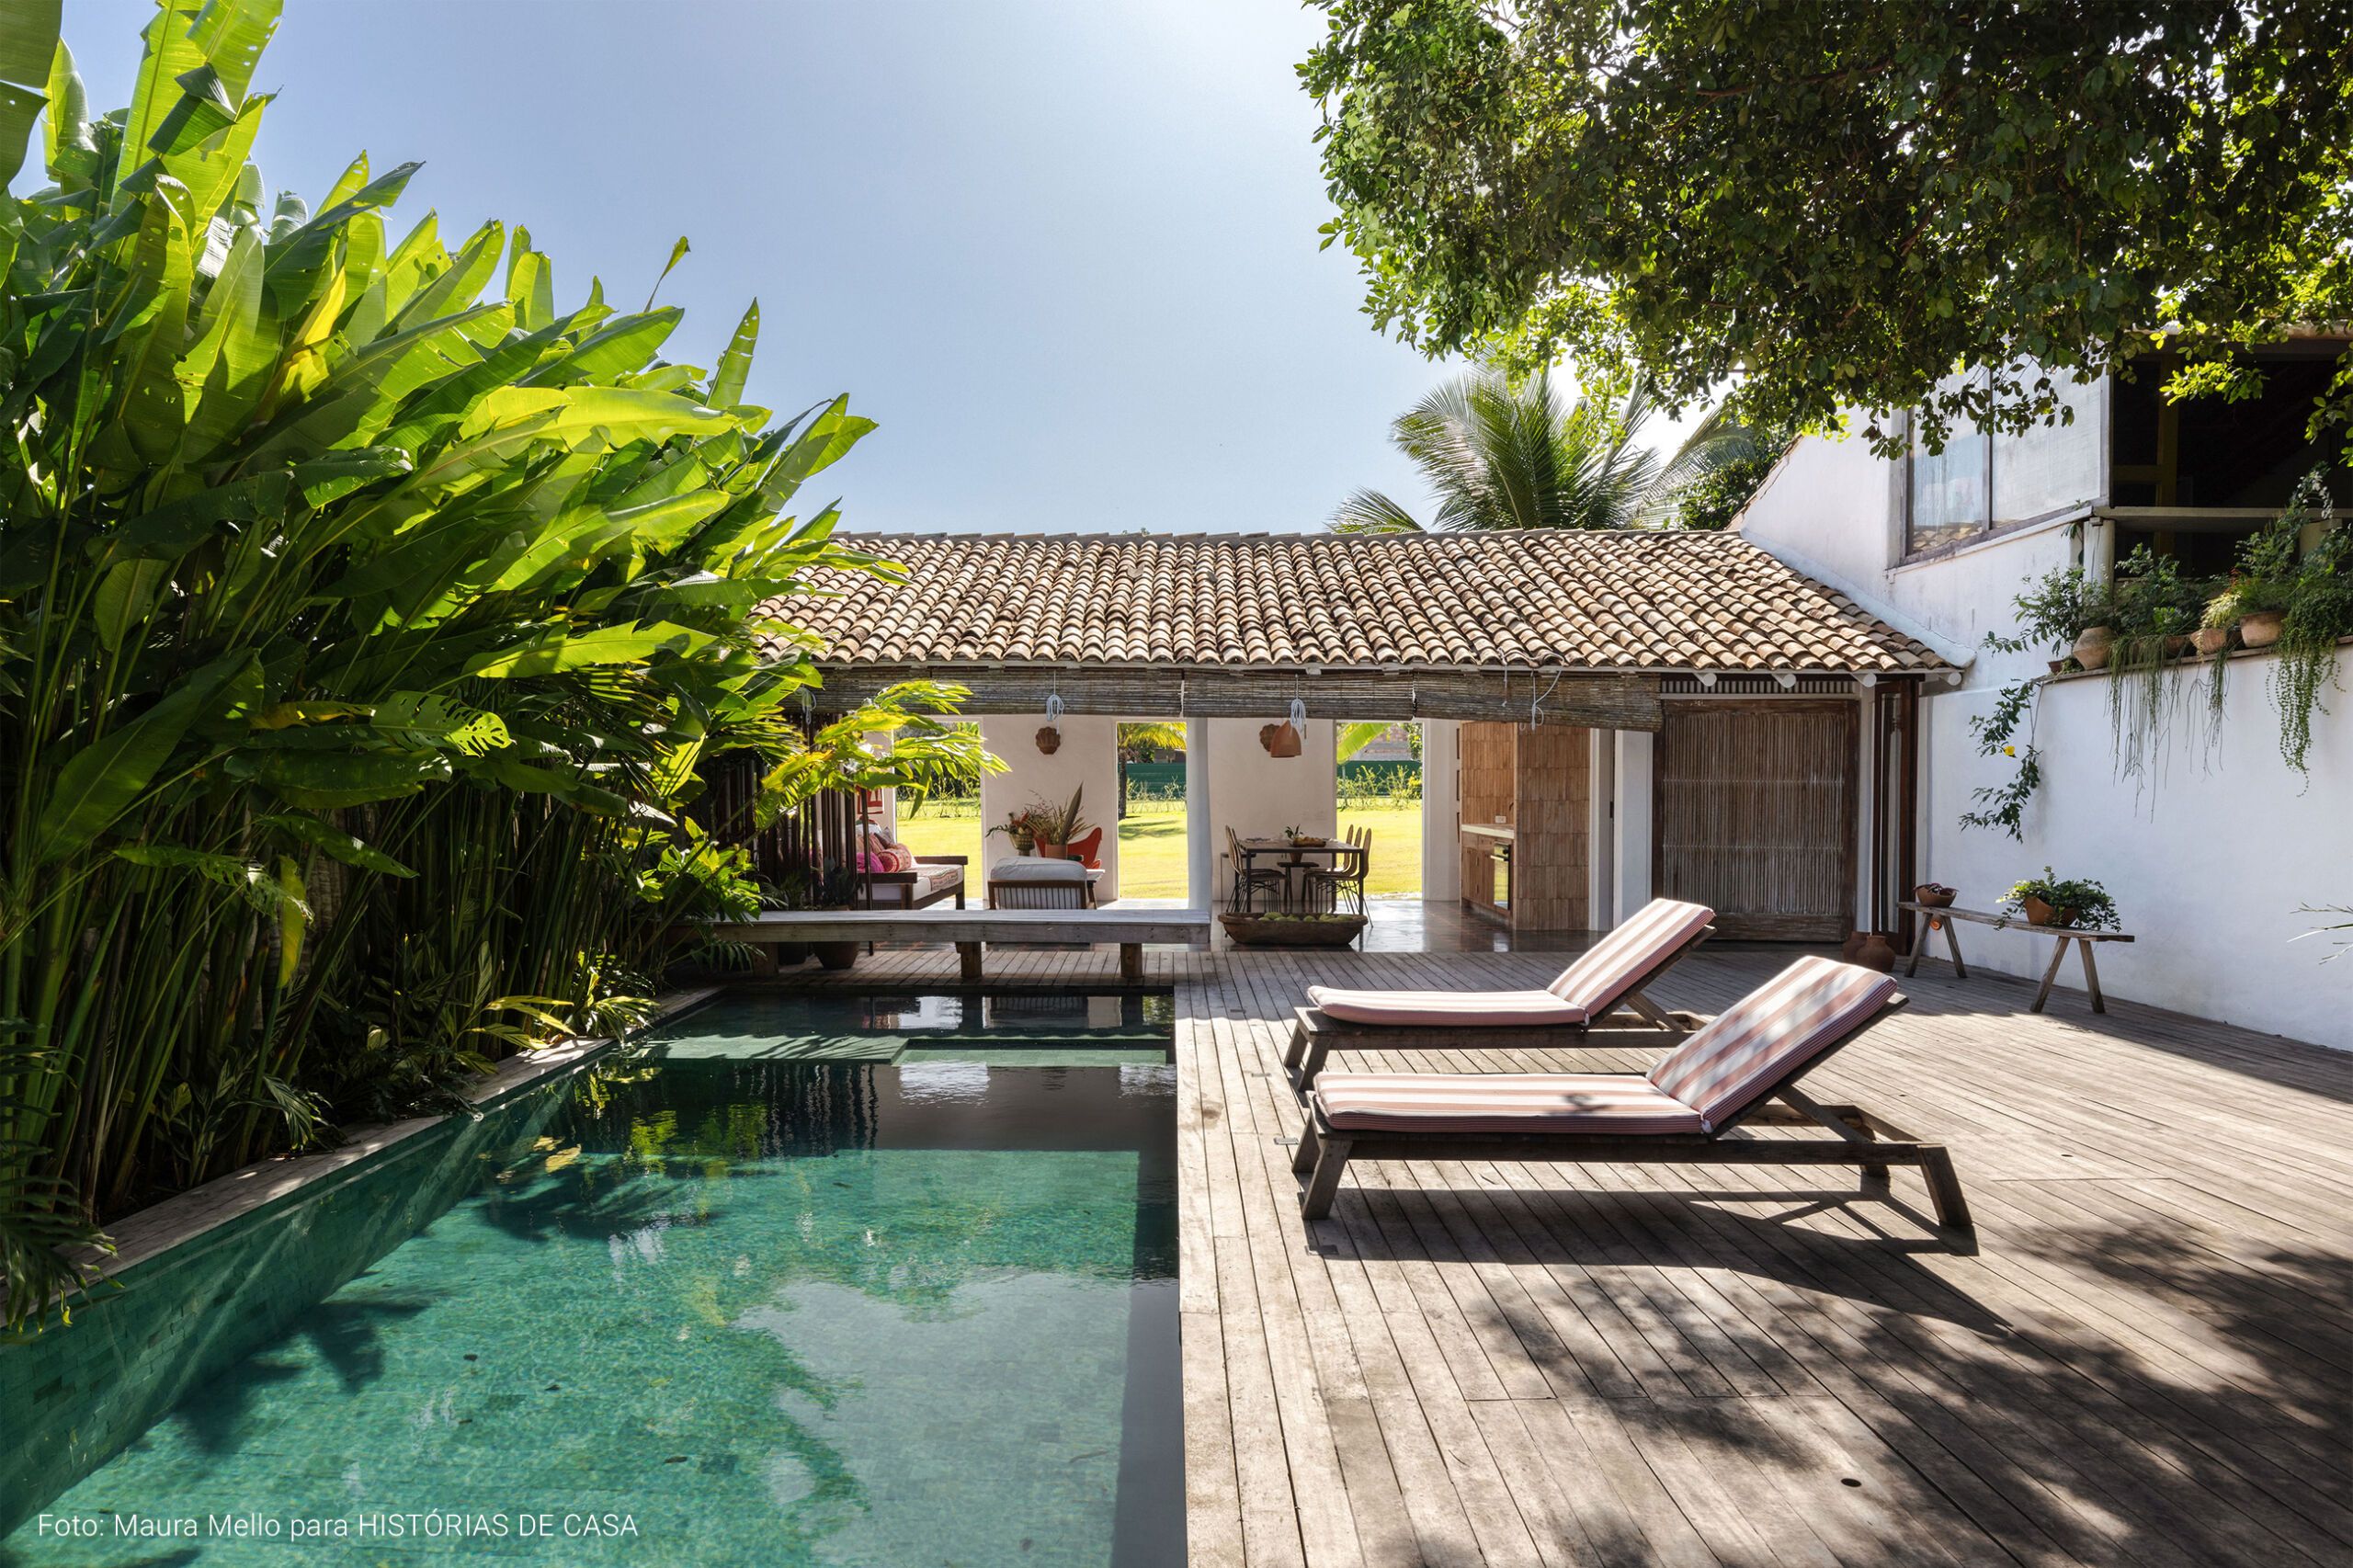 Casa com decoração praiana, uso de materiais naturais e área externa com piscina